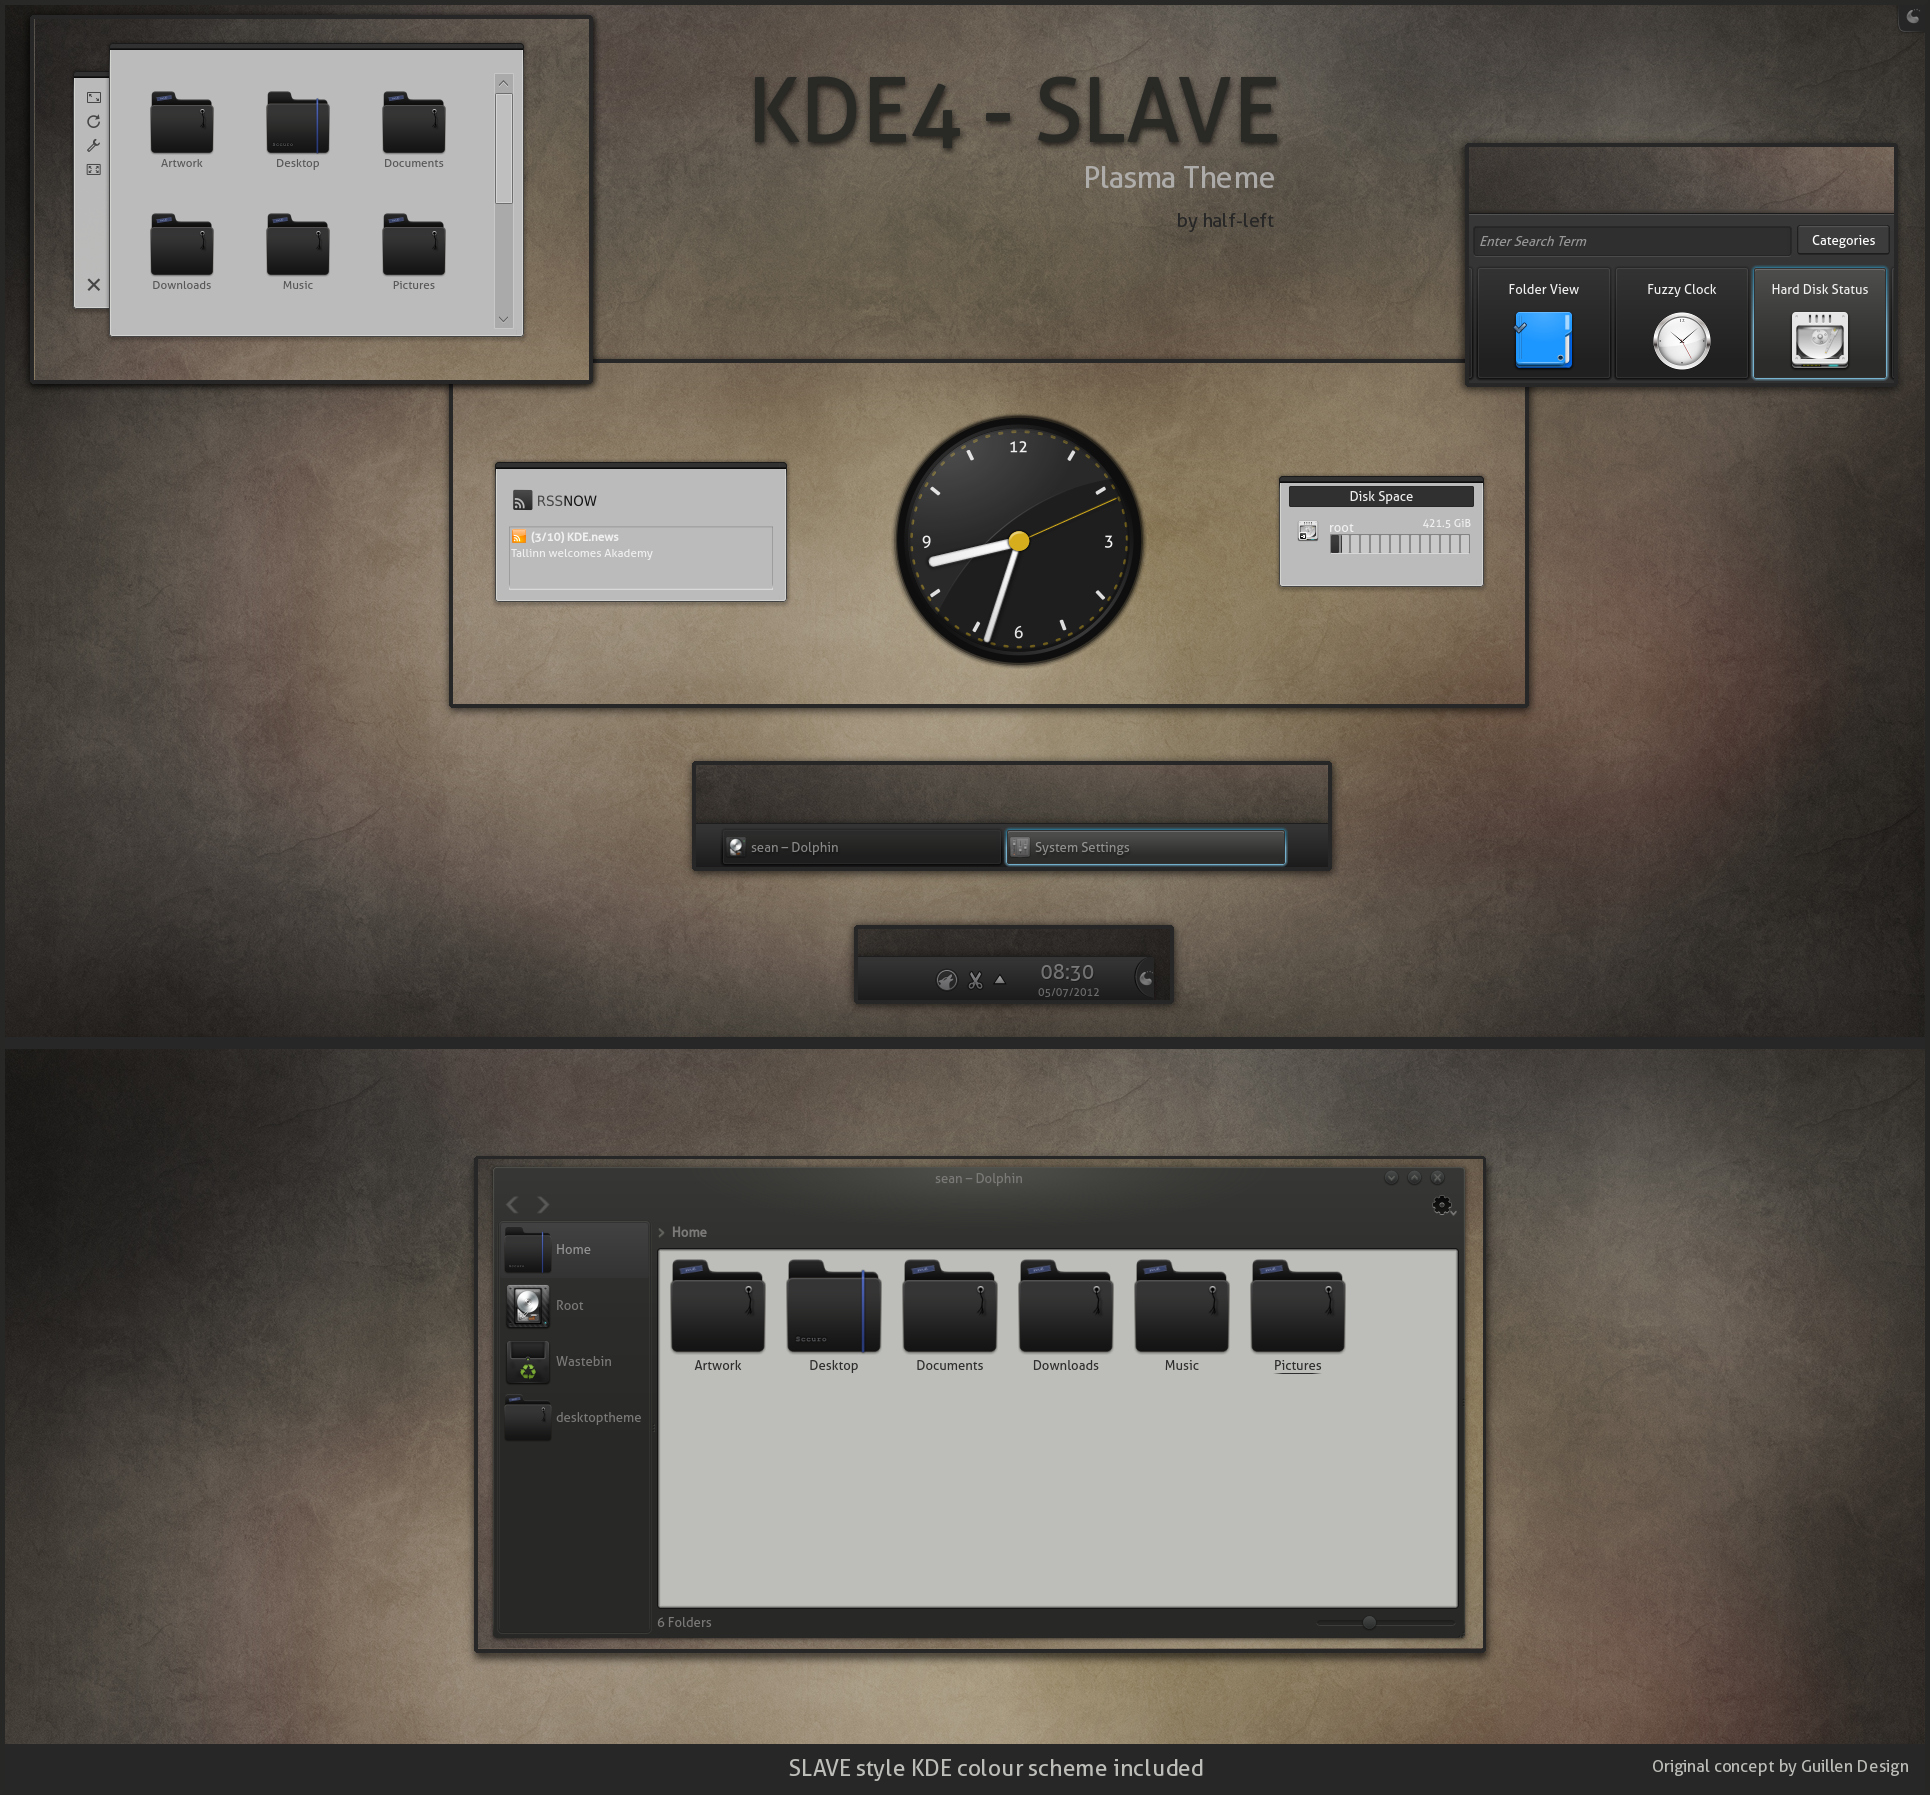 KDE4 - SLAVE